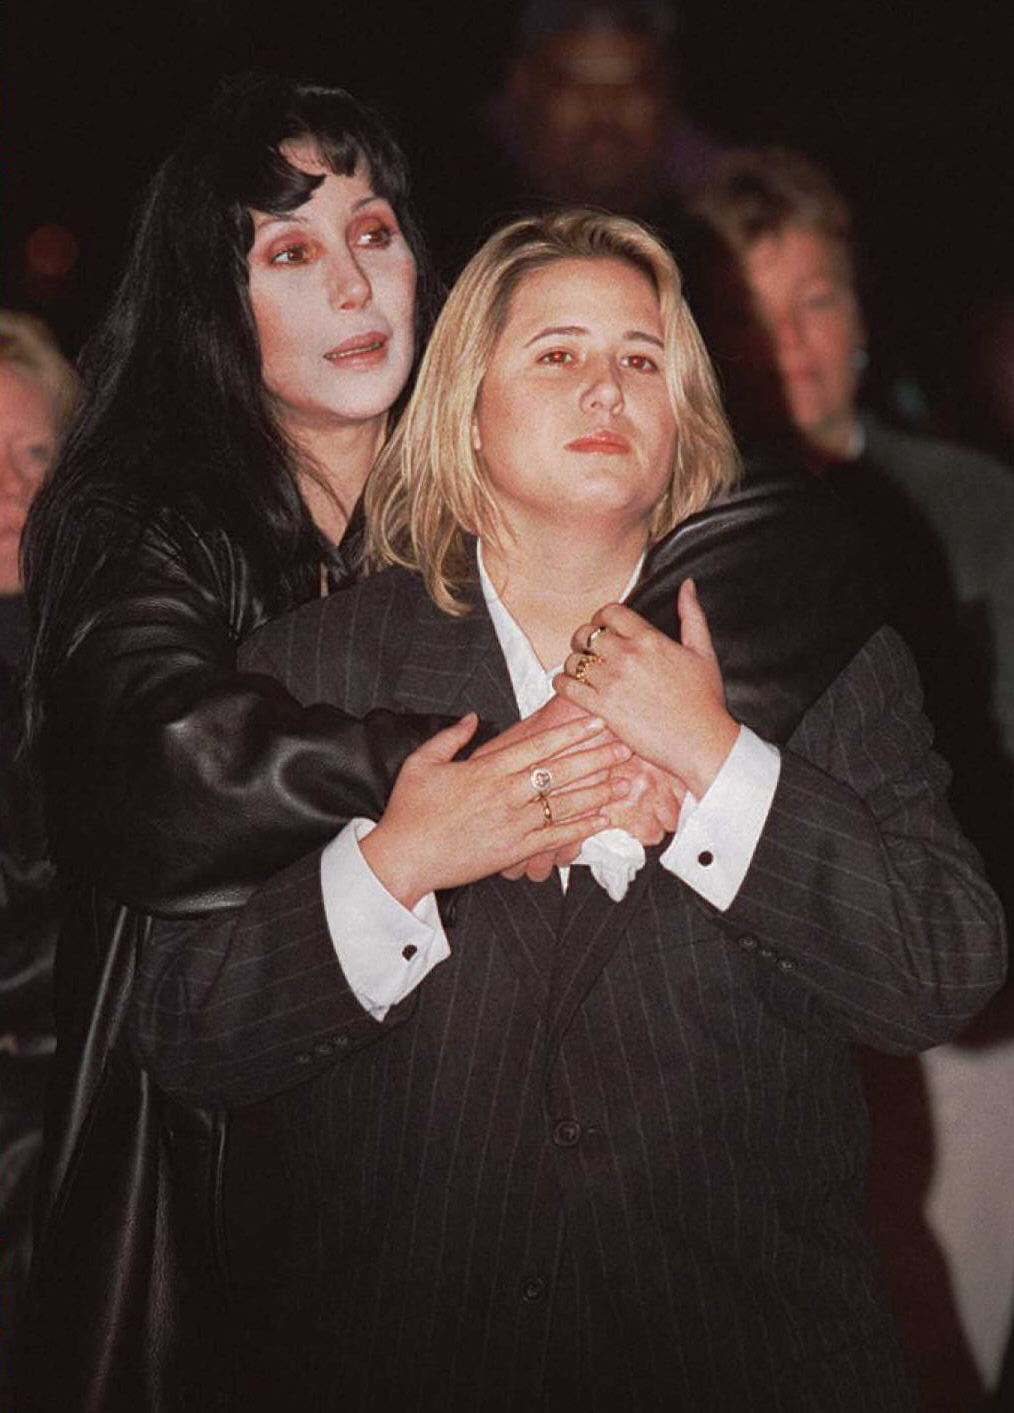 Cher tröstet Chastity Bono während einer Kundgebung zum "National Coming Out Day" in Washington DC am 11. Oktober 1996. | Quelle: Getty Images